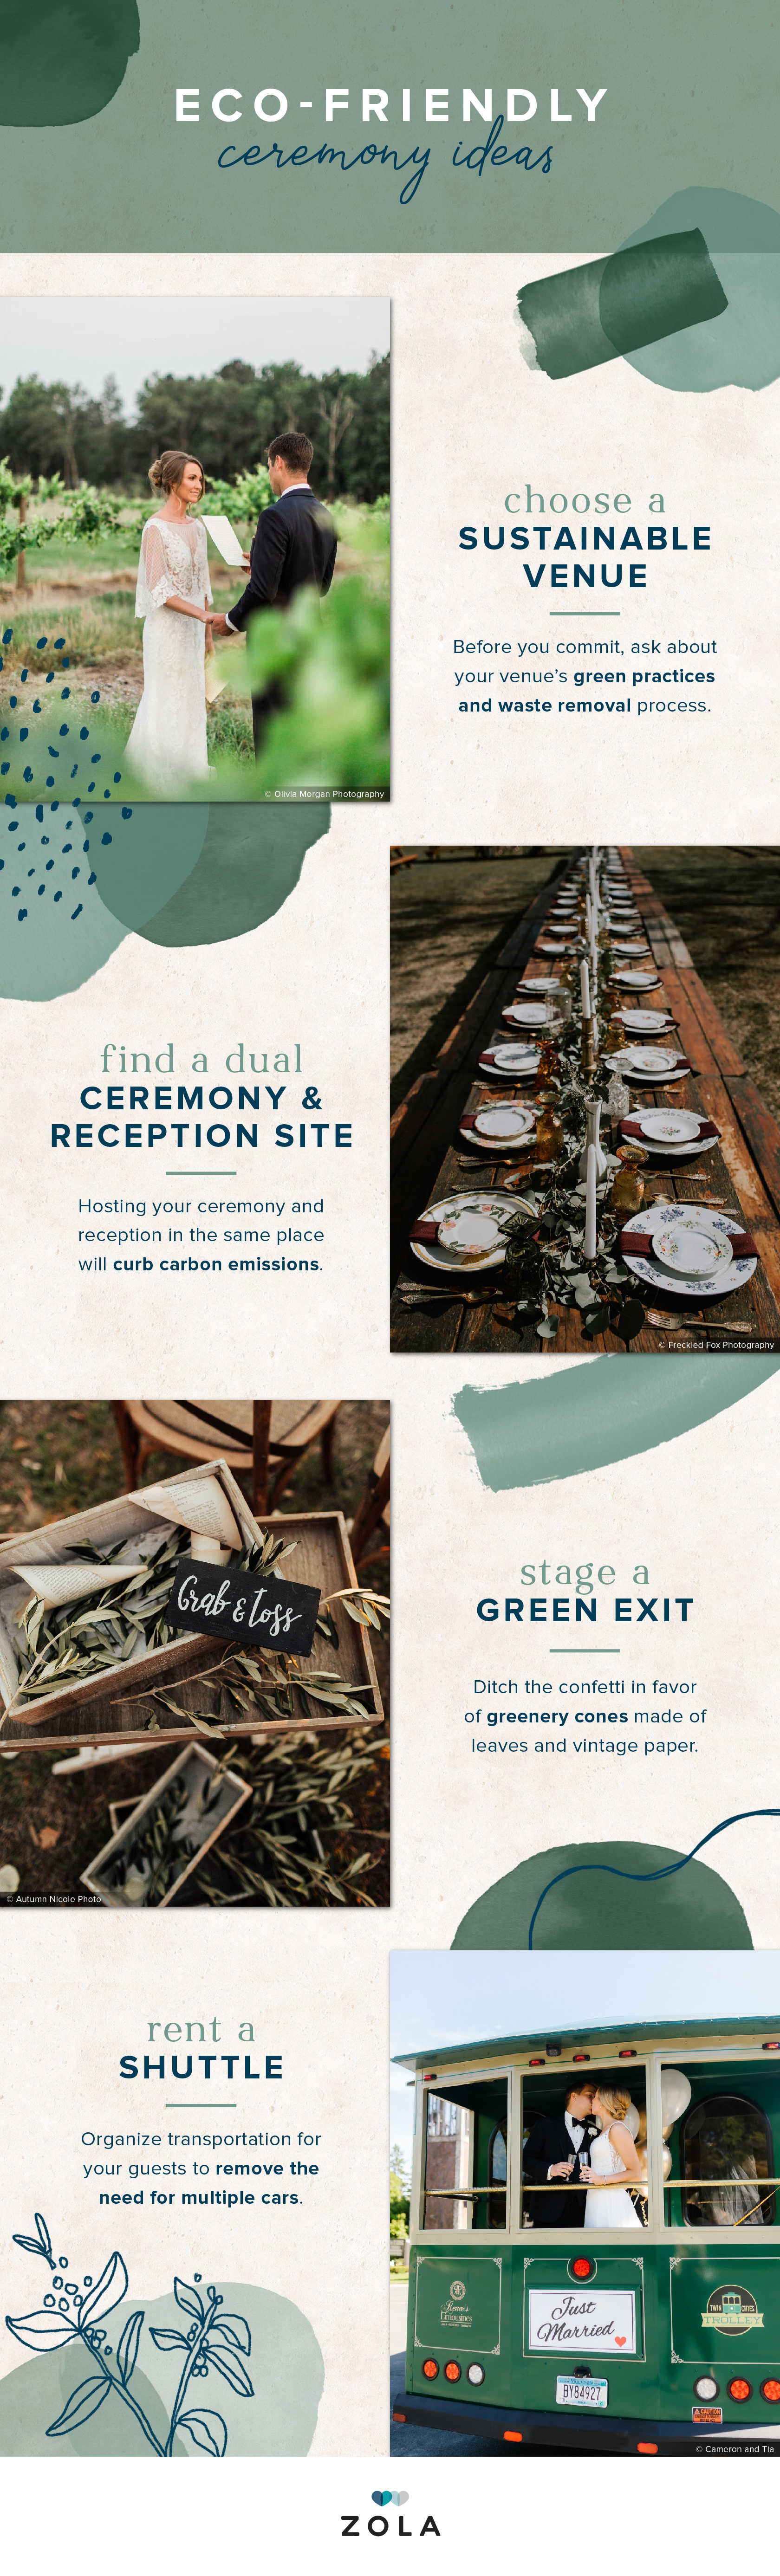 eco-friendly-wedding-ideas-ceremony